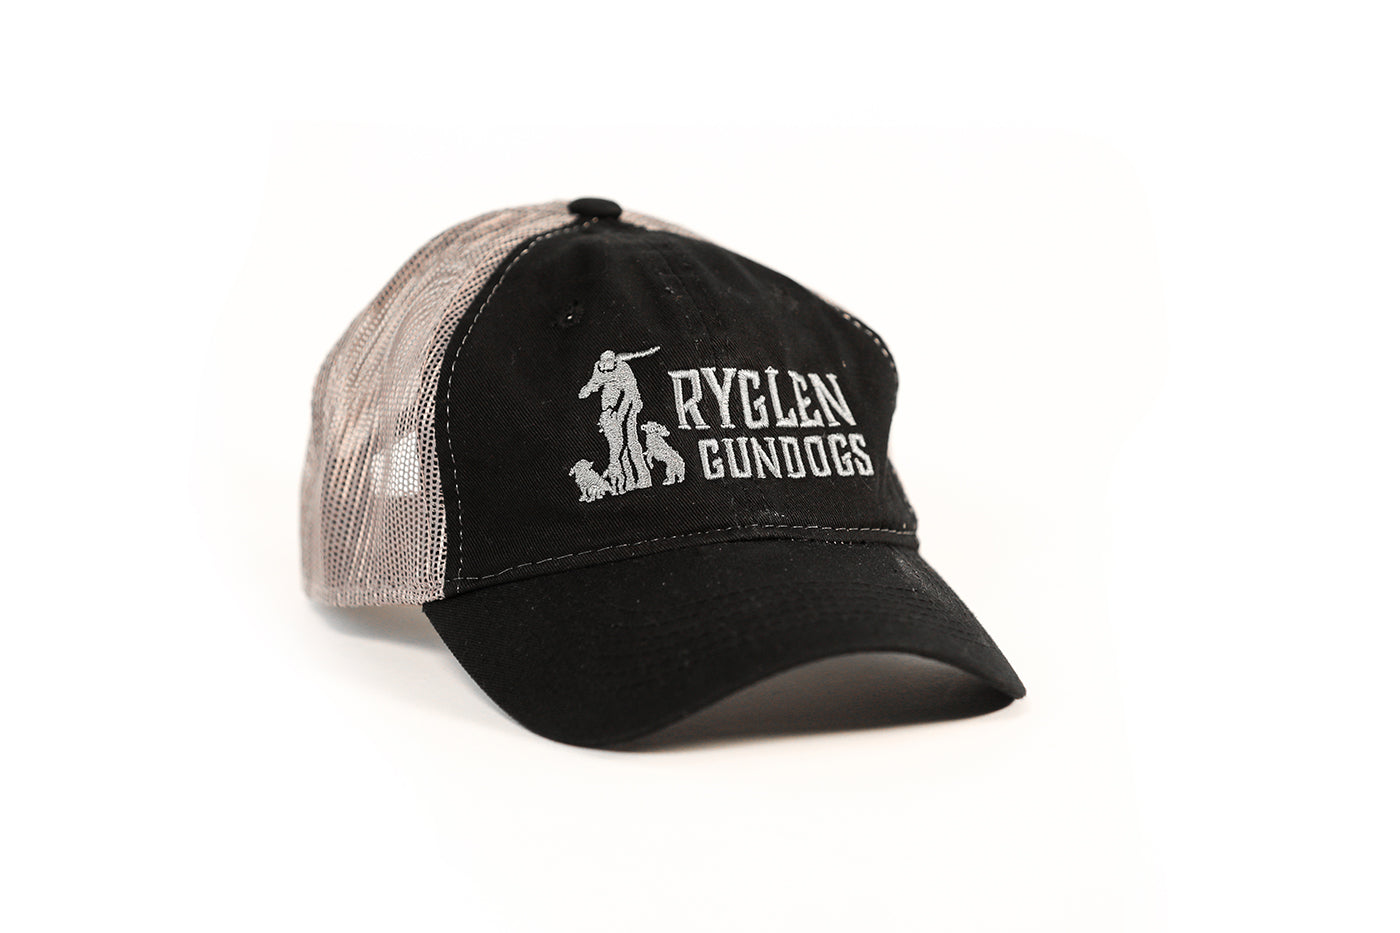 Ryglen Hat - Platinum style